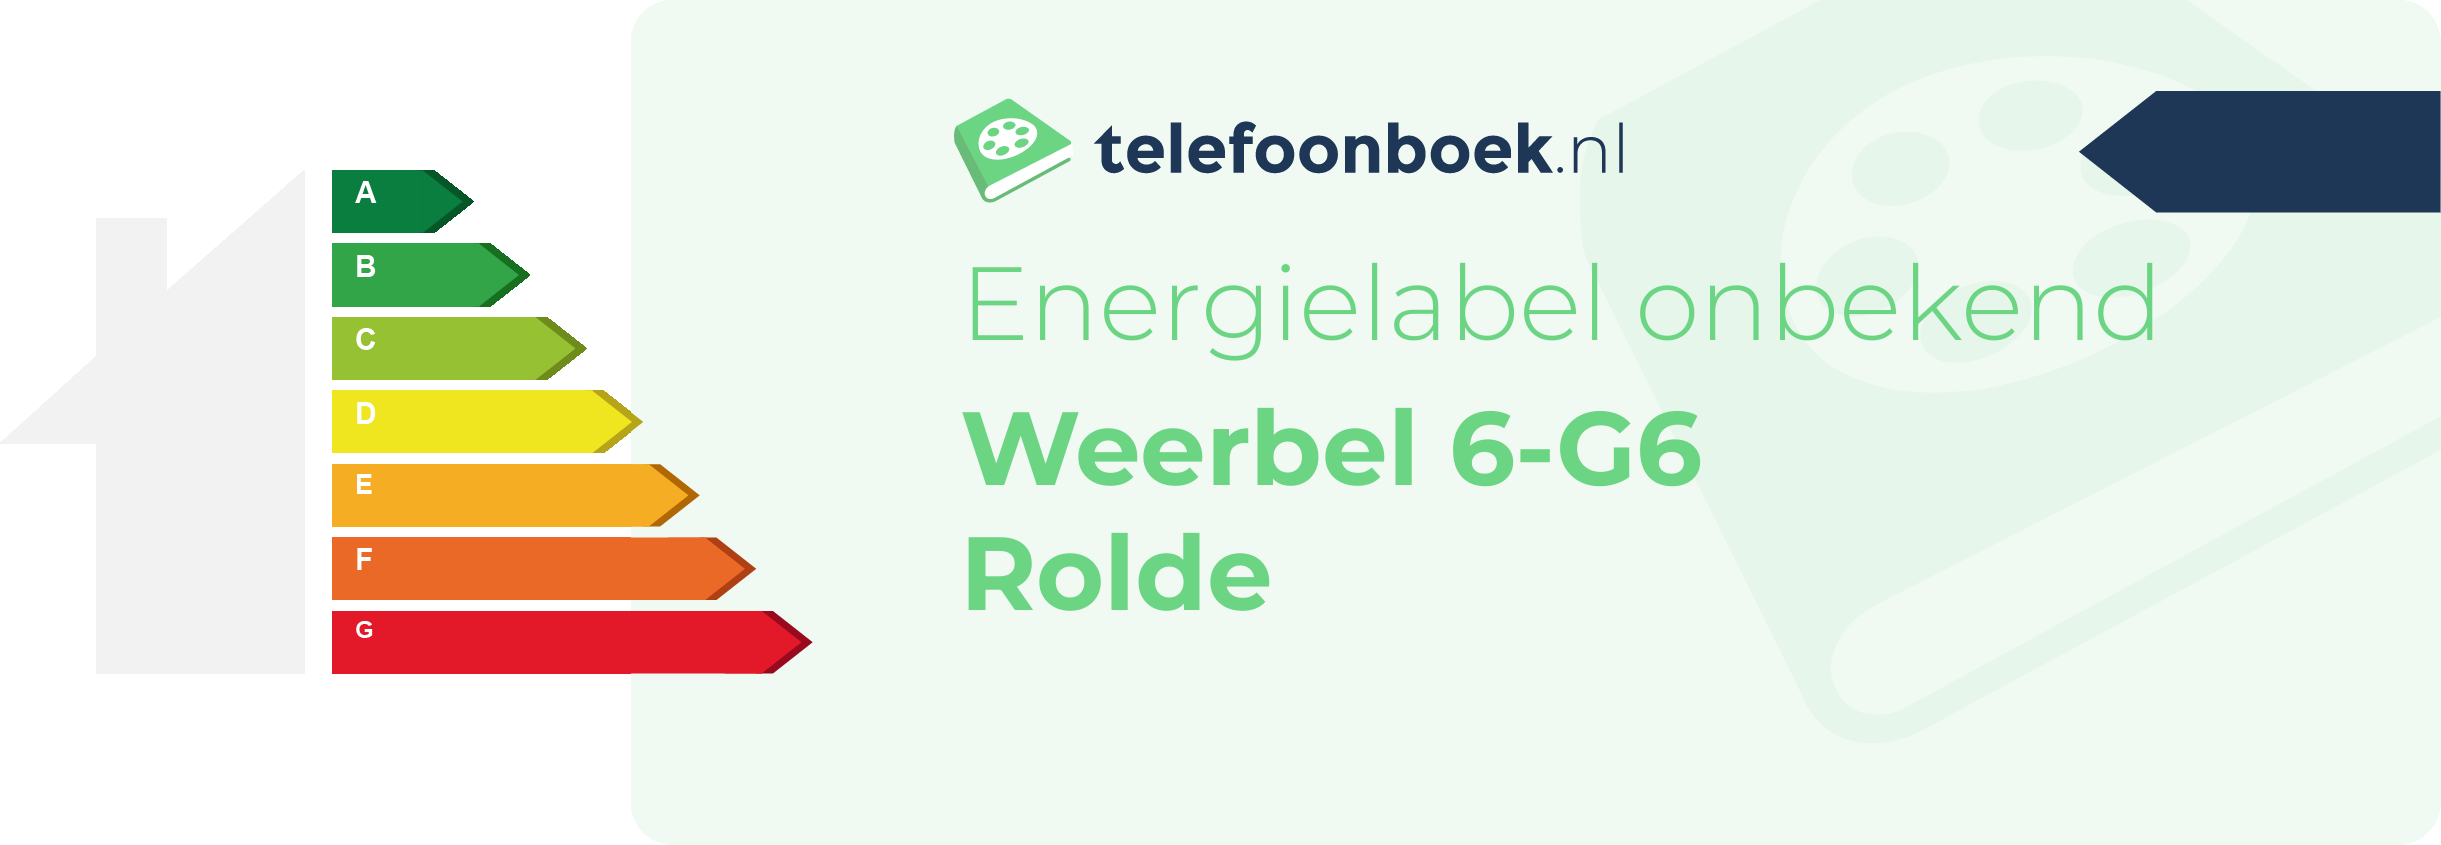 Energielabel Weerbel 6-G6 Rolde